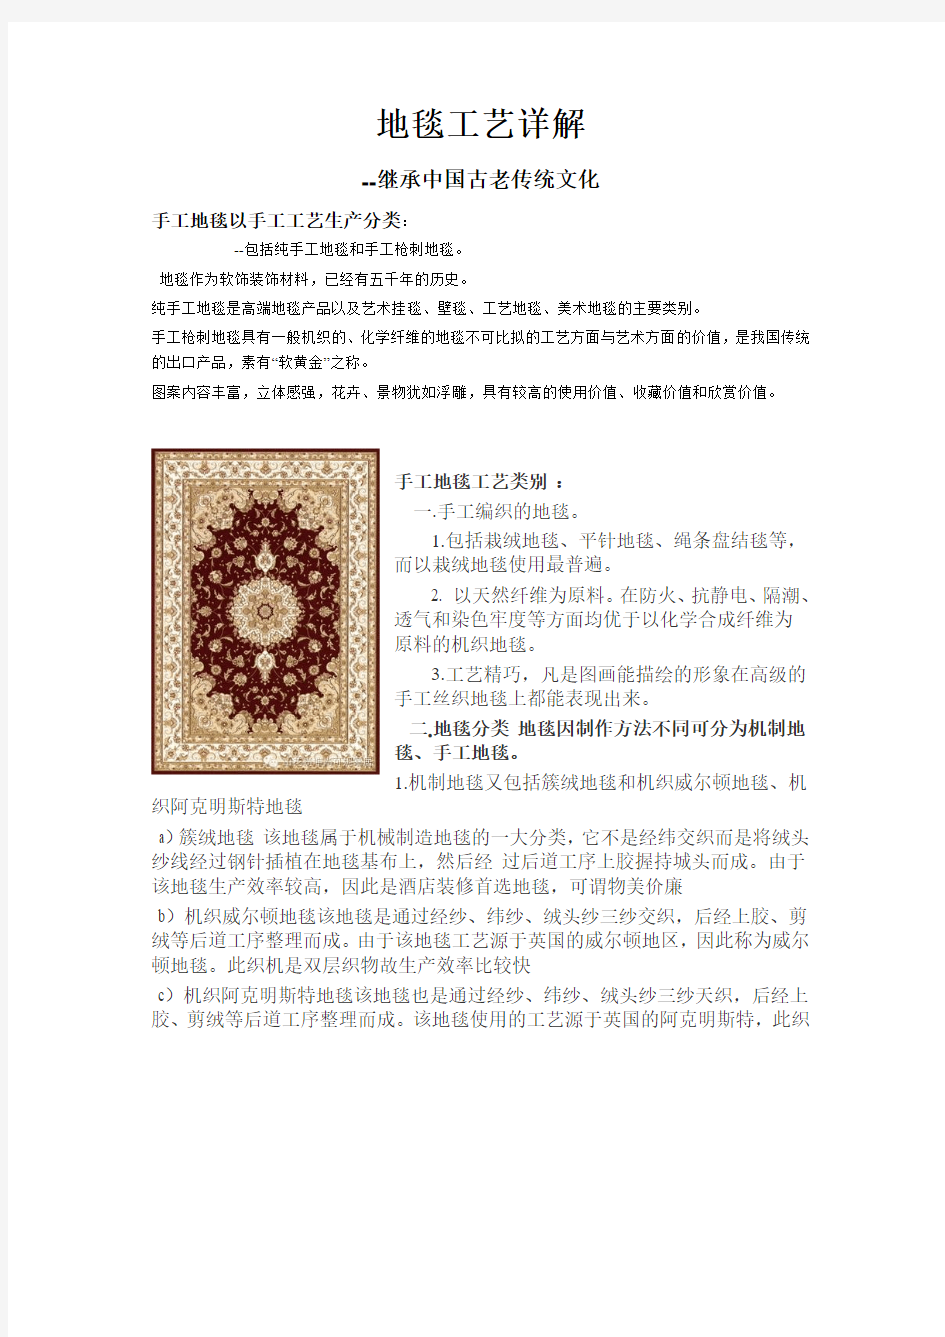 地毯工艺详解--继承中国古老传统文化2017-A